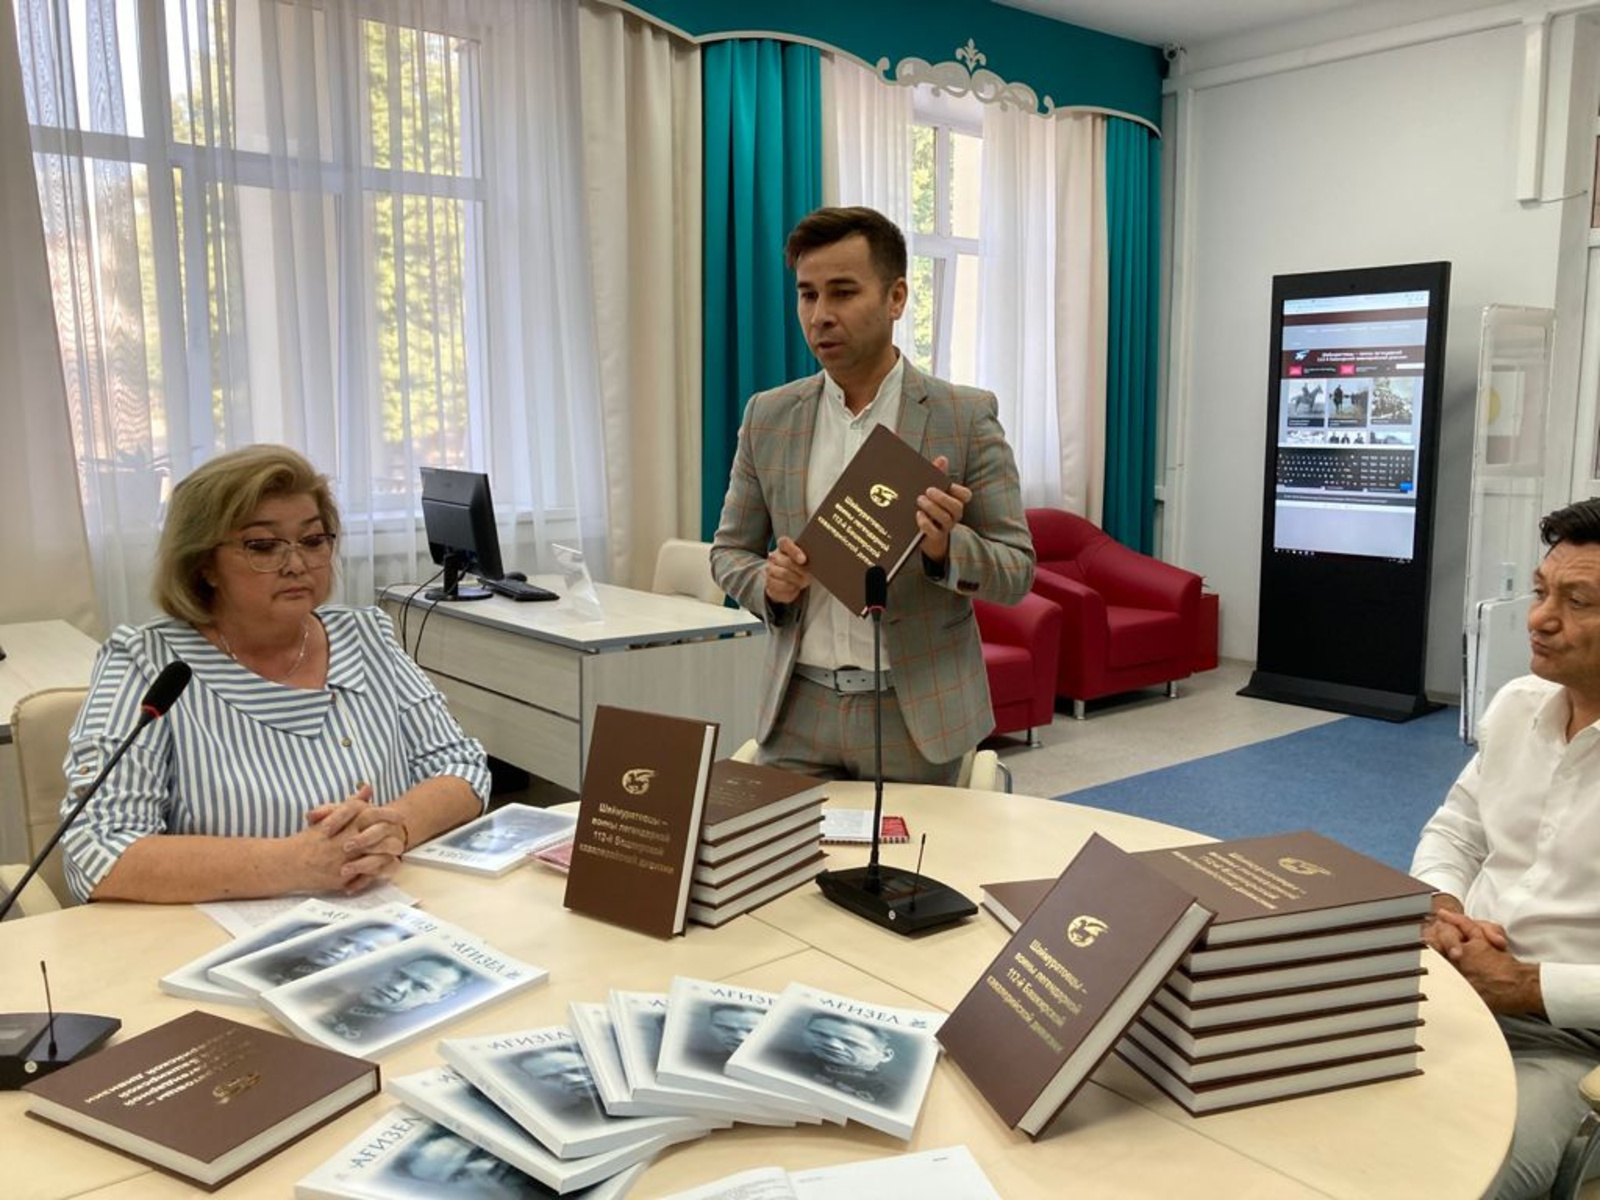 Всемирный курултай башкир передал Национальной библиотеке РБ справочники от шаймуратовцах